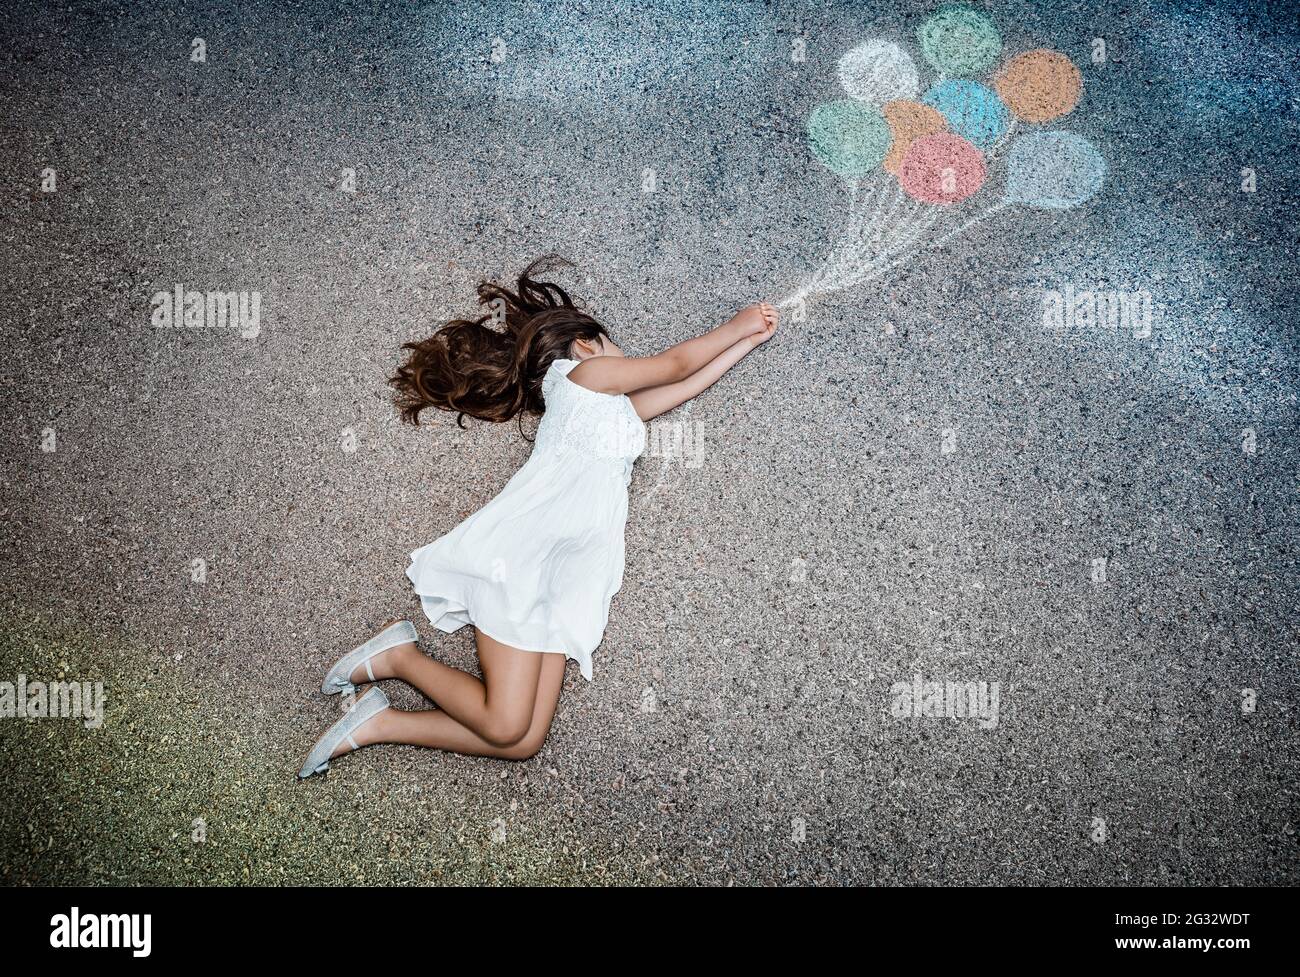 Immagine concettuale della libertà gioia e felicità. Little Girl volare via su palloncini colorati. Godendo la vita. L'Infanzia sognante. Immaginazione creativa. Foto Stock